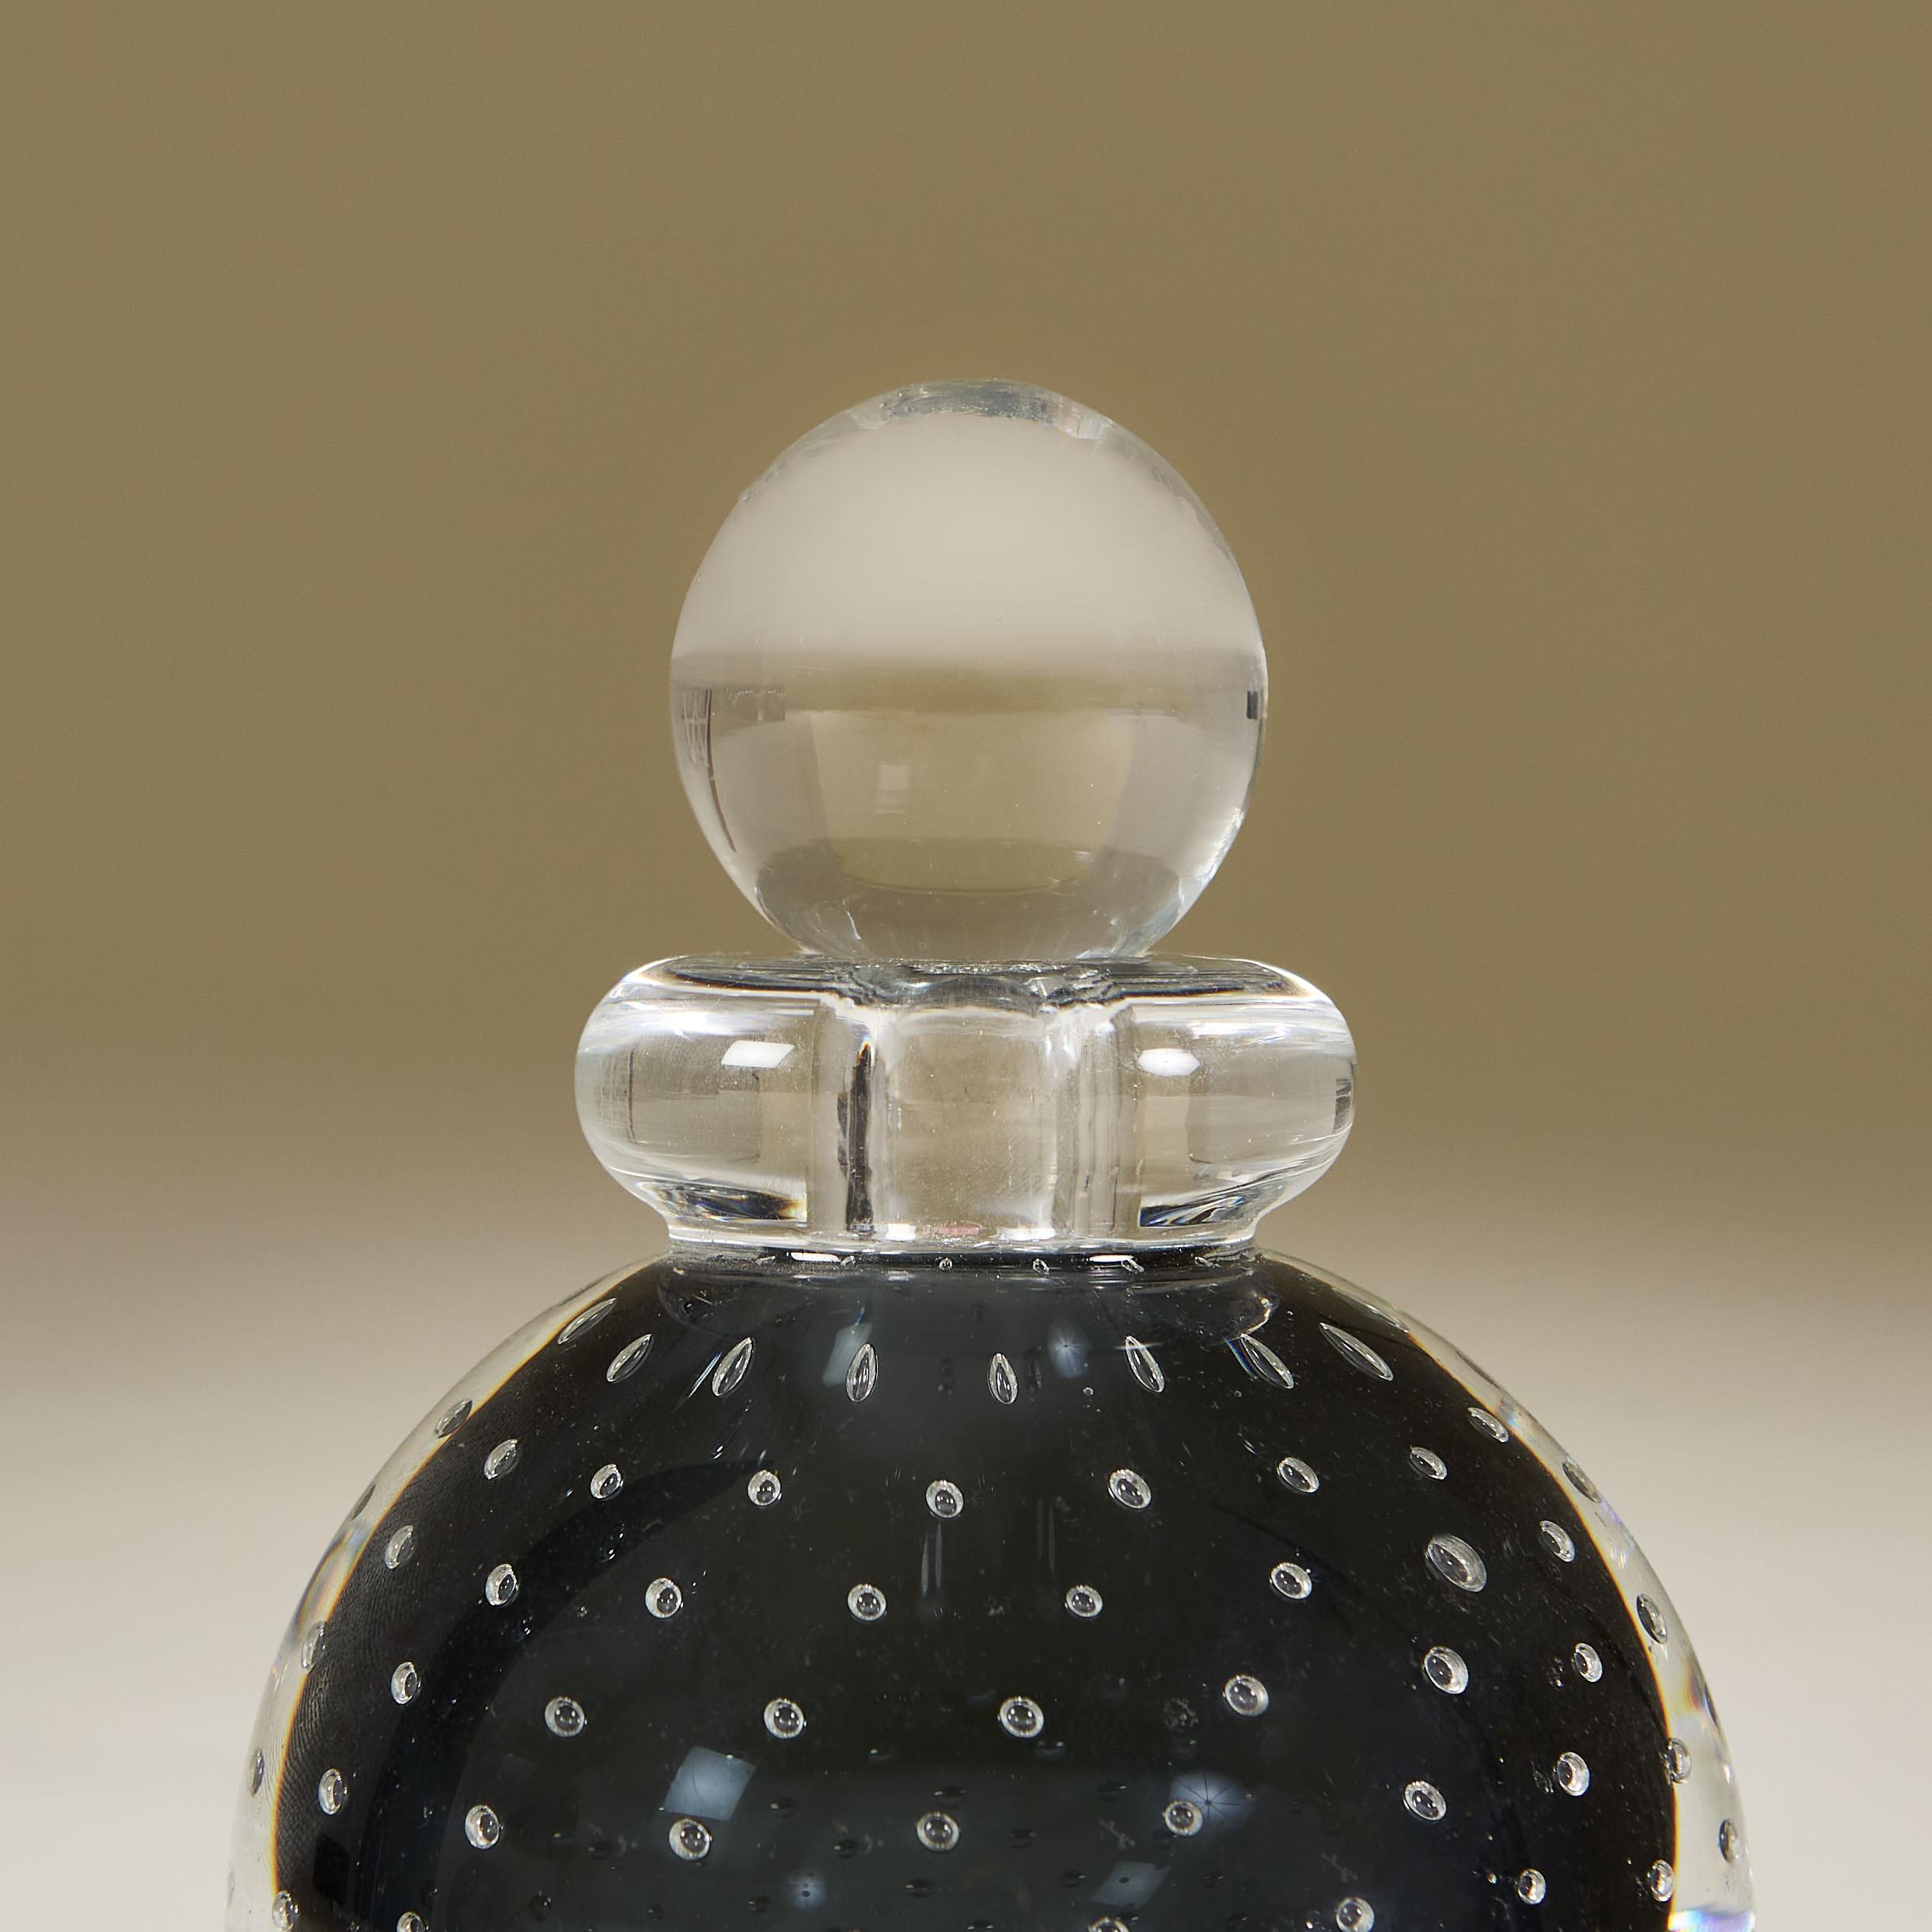 Perfume Bottle 1 0040 V1